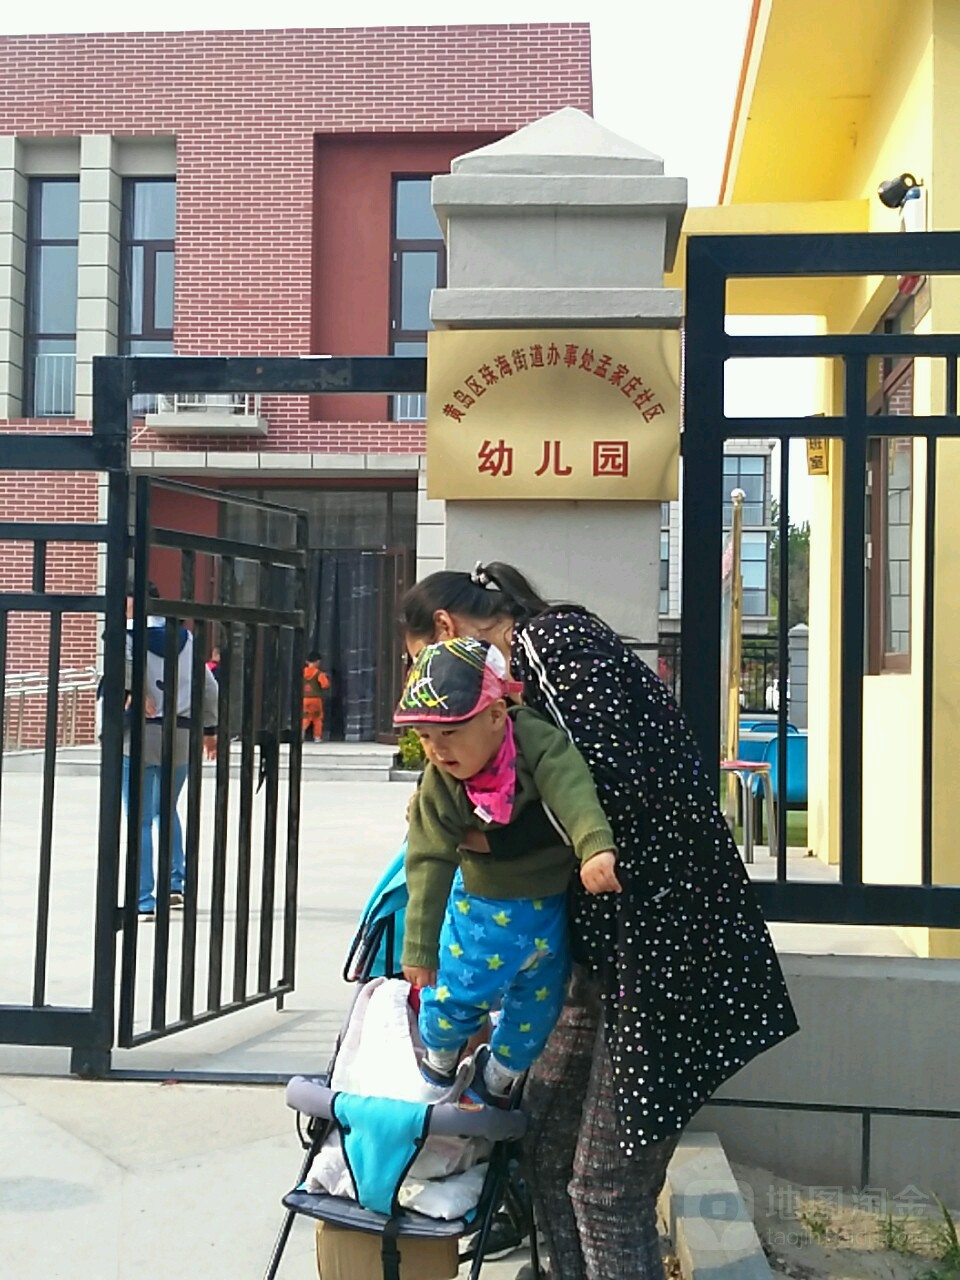 黄岛区珠海街道办事处孟家庄社区幼儿园的图片